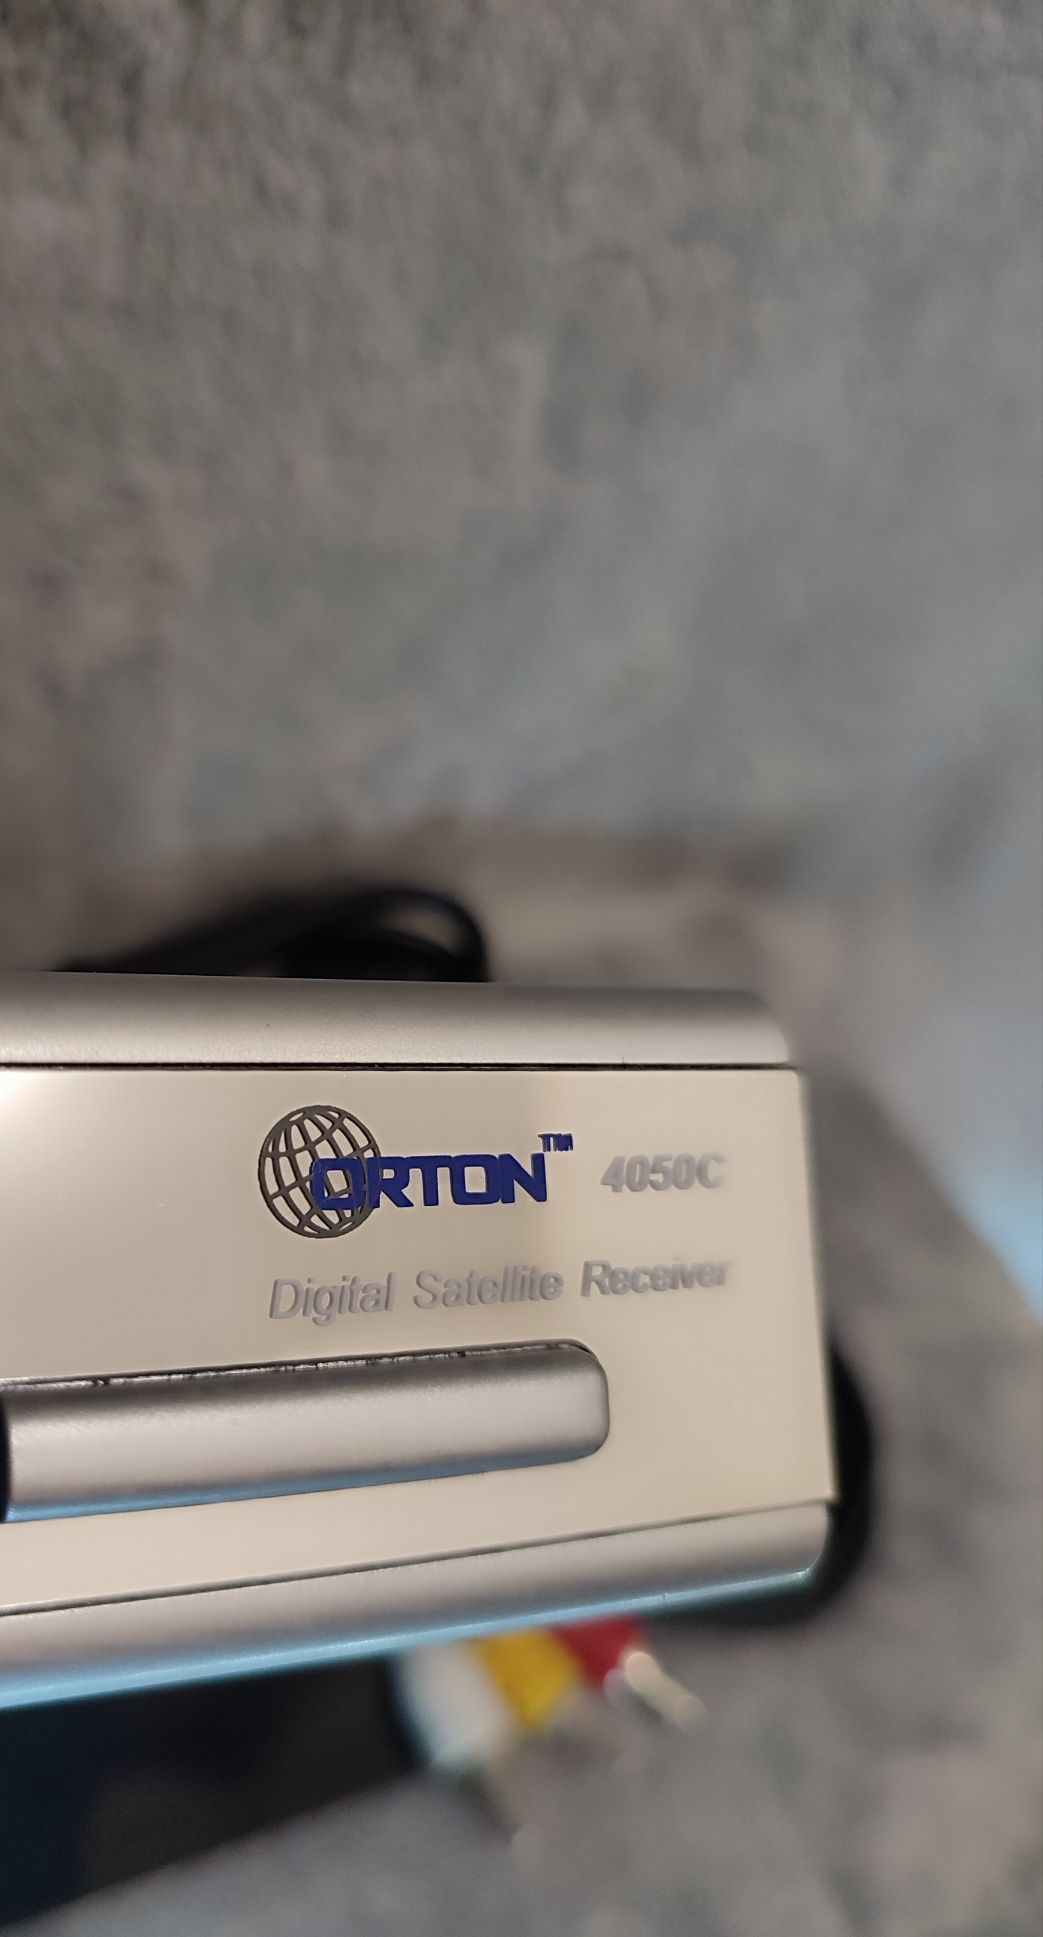 TV тюнер для спутниковой тарелки Orton 4050c